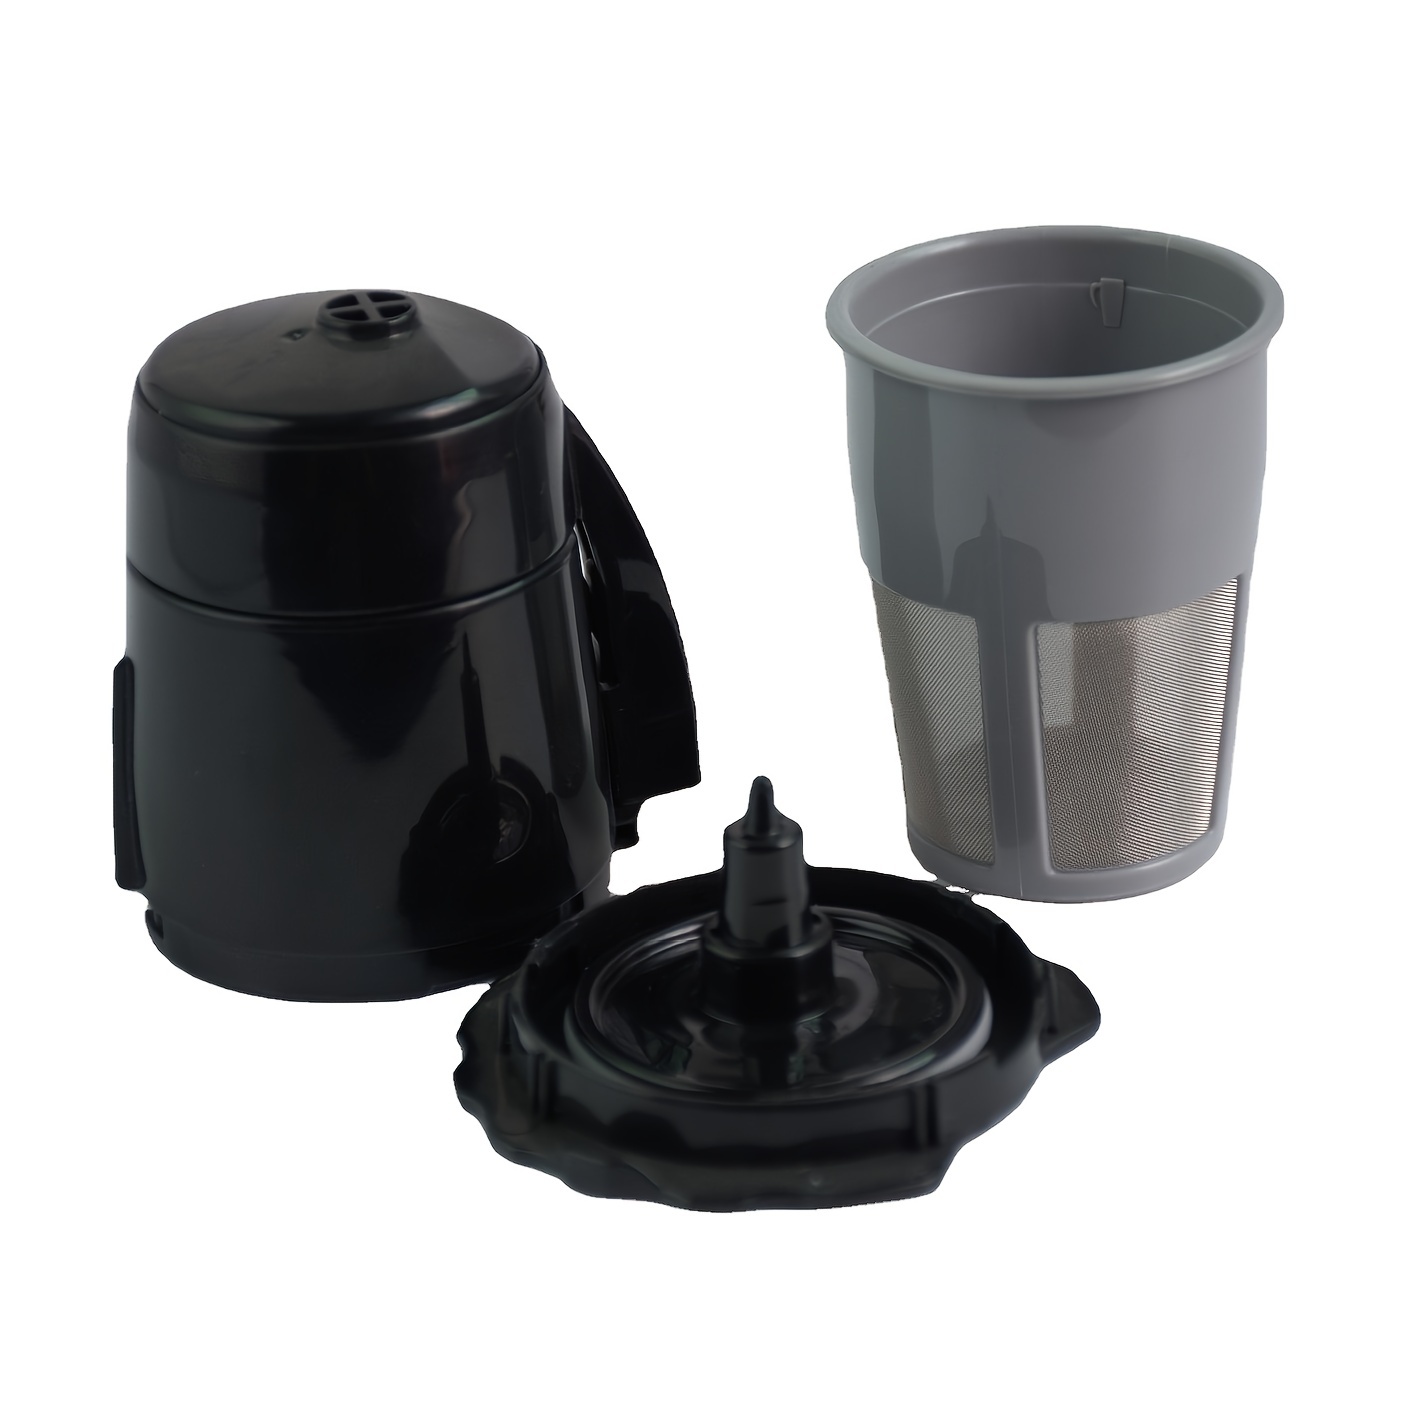 Filtro de cápsulas de café K-cup reutilizable, filtro K-cup recargable  universal de acero inoxidable para cafeteras Keurig 2.0 y 1.0